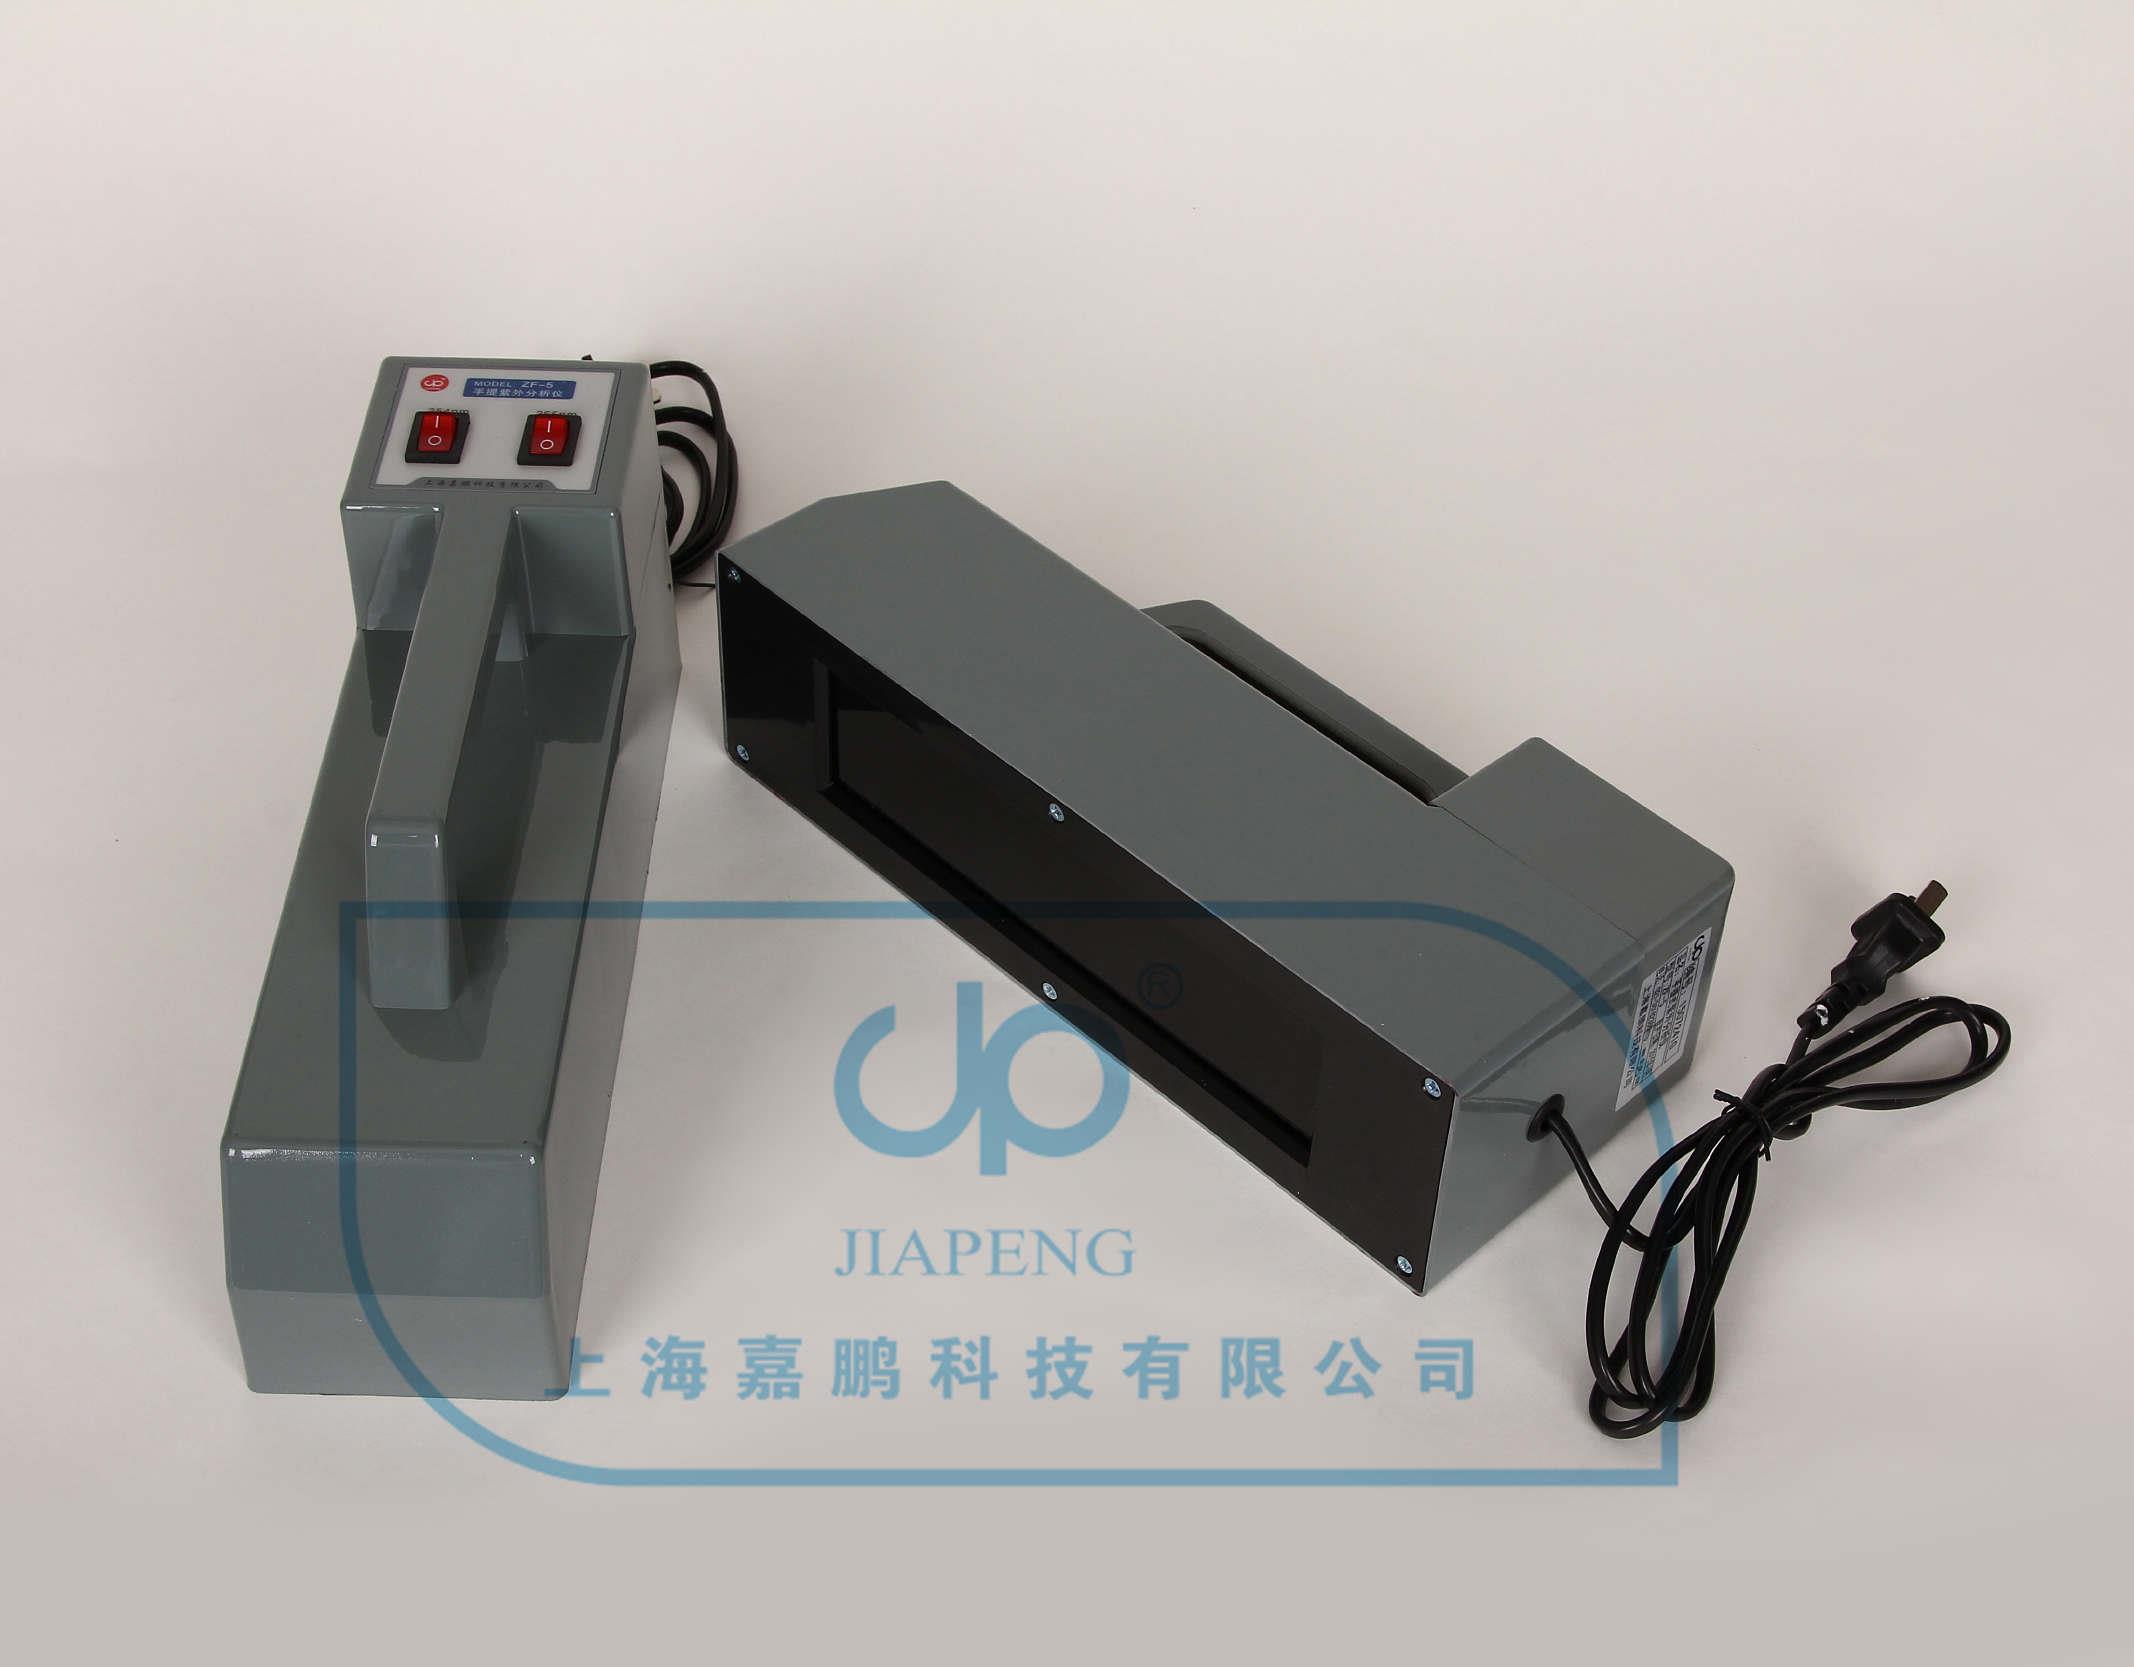 上海嘉鵬手提式紫外分析儀ZF-5